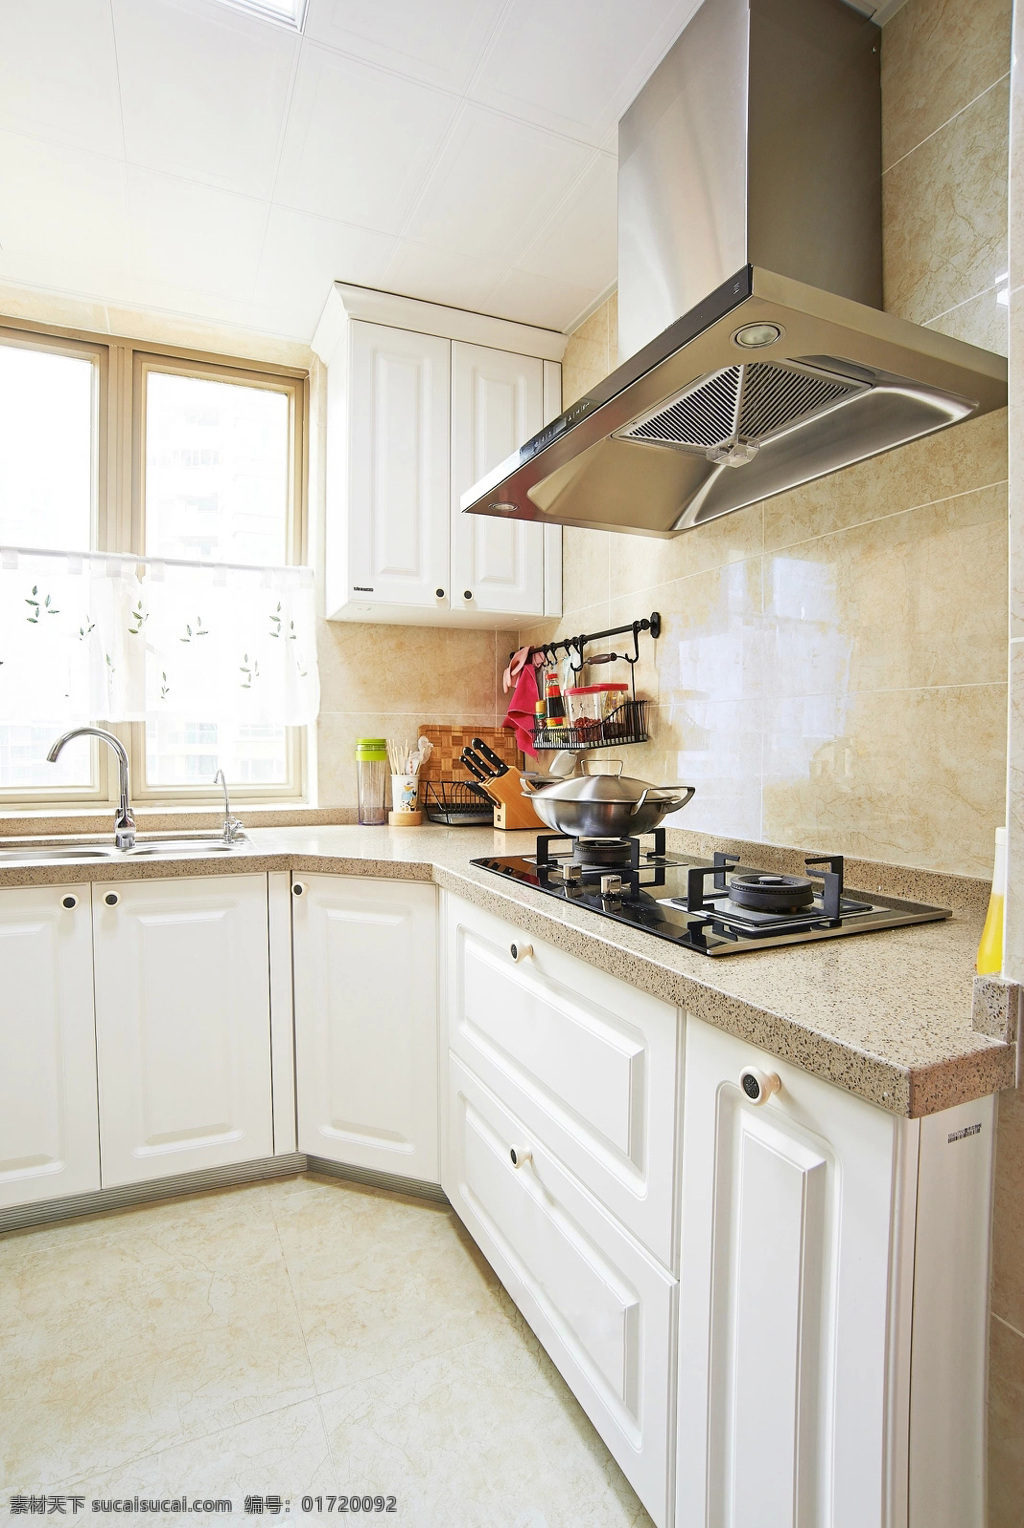 简约 风 室内设计 厨房 白色 灶台 效果图 现代 料理台 调 家装 集成灶 抽油烟机 洗菜池 壁柜 收纳柜